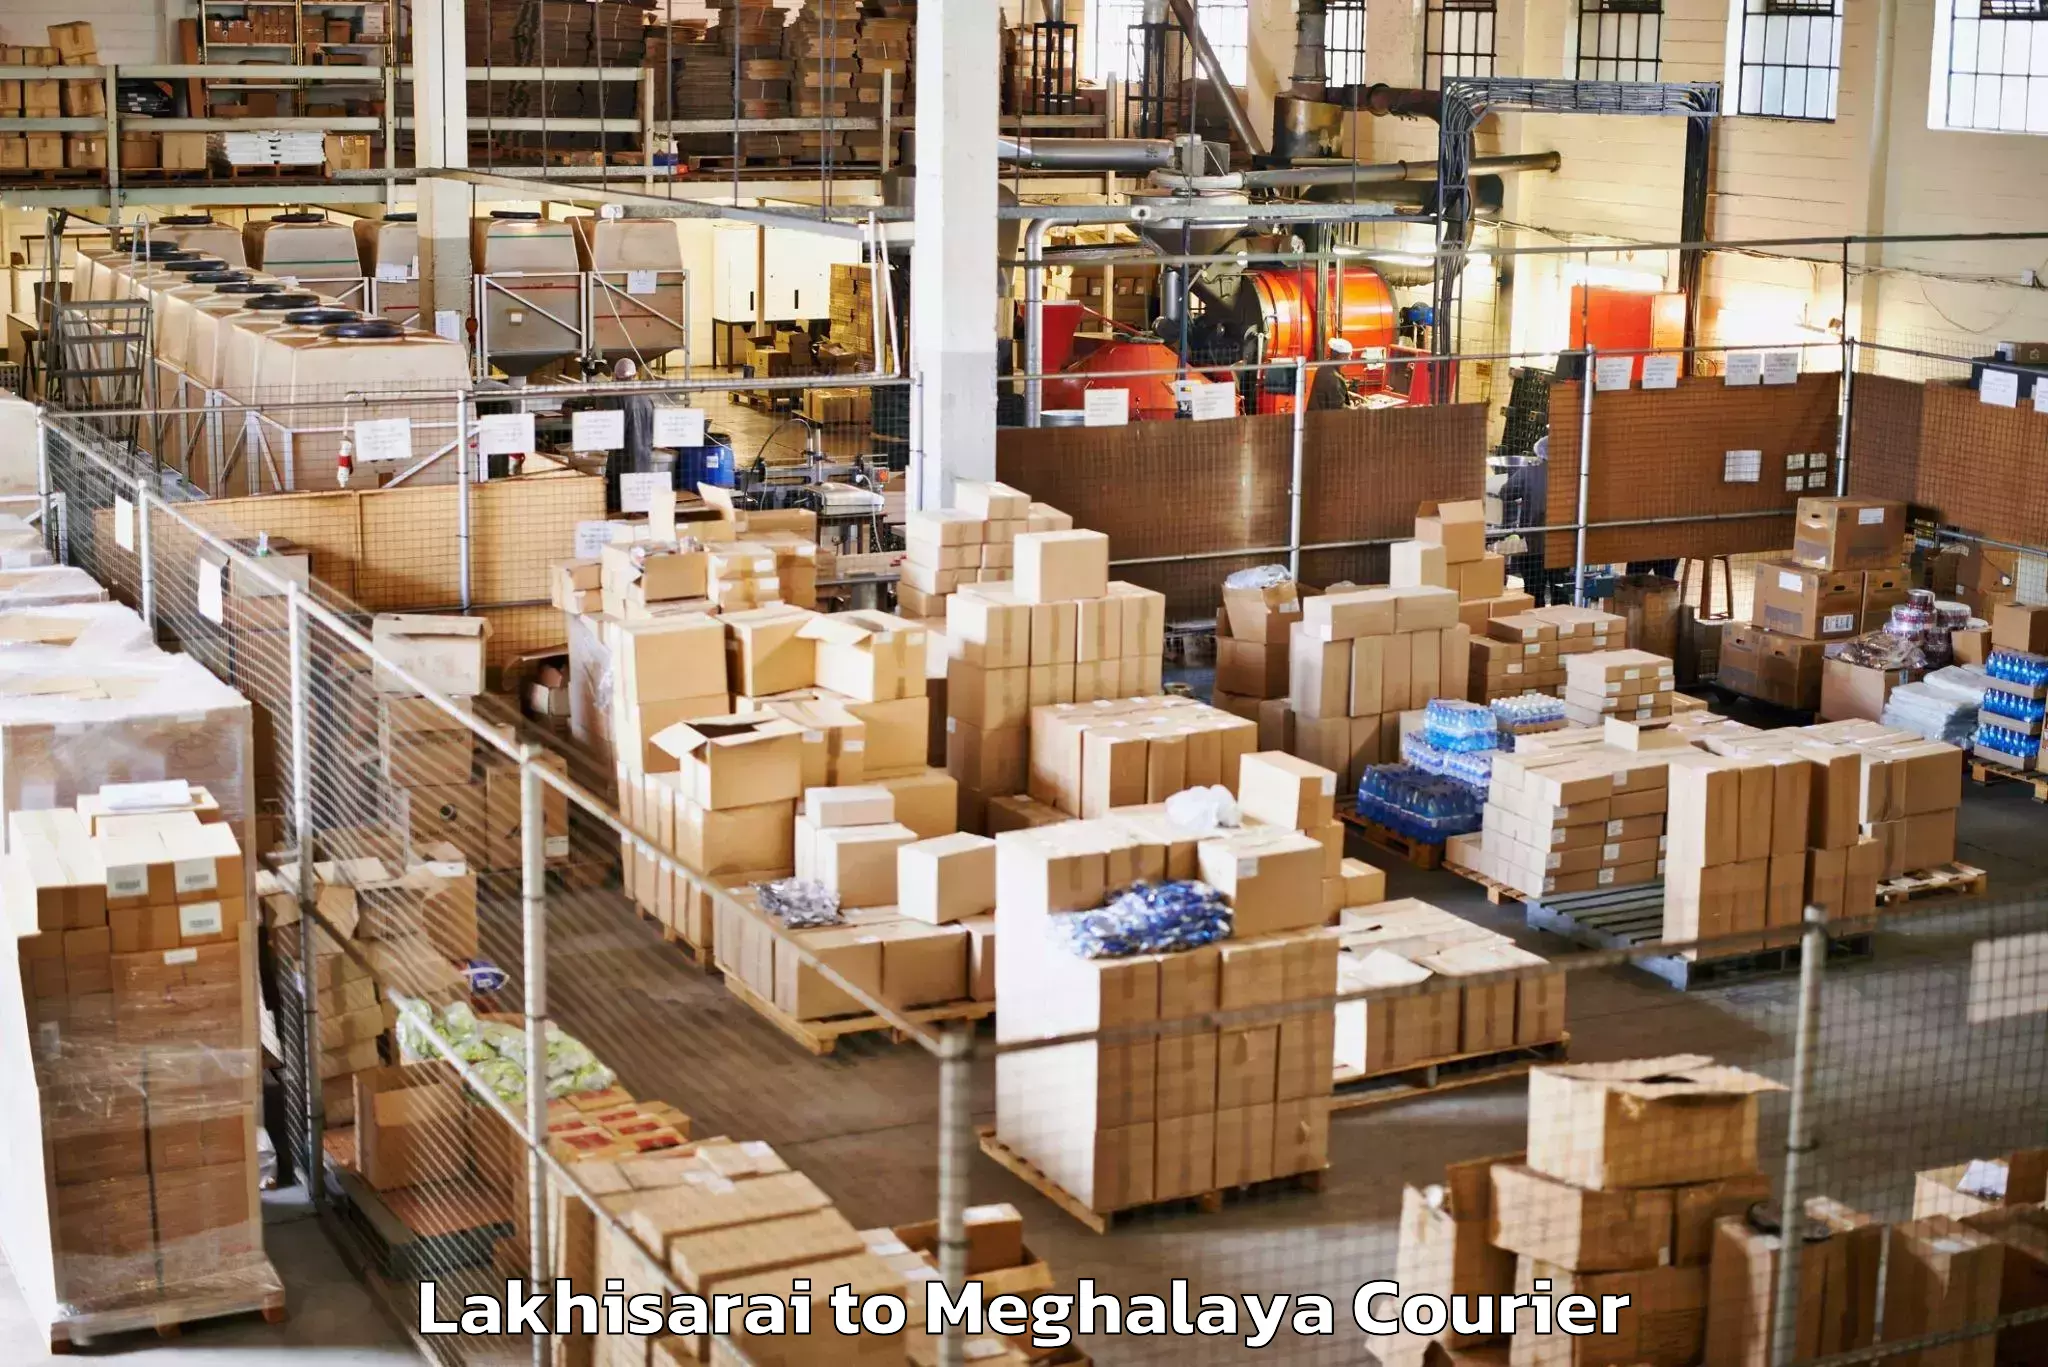 Baggage shipping service Lakhisarai to Meghalaya